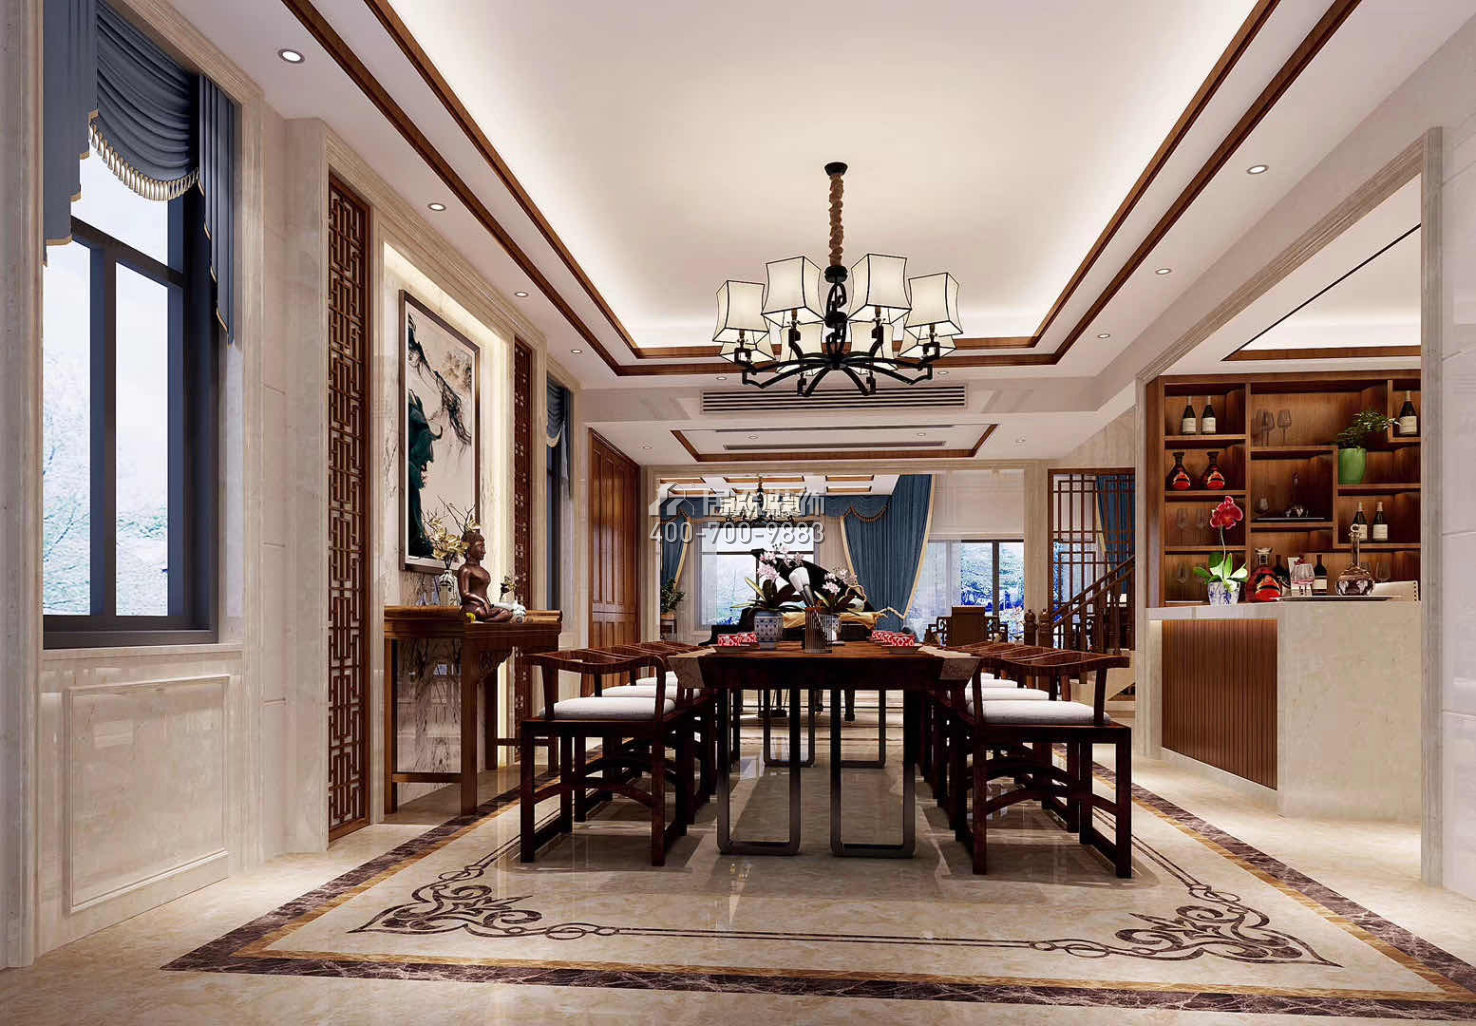 華桂園330平方米中式風格別墅戶型茶室裝修效果圖